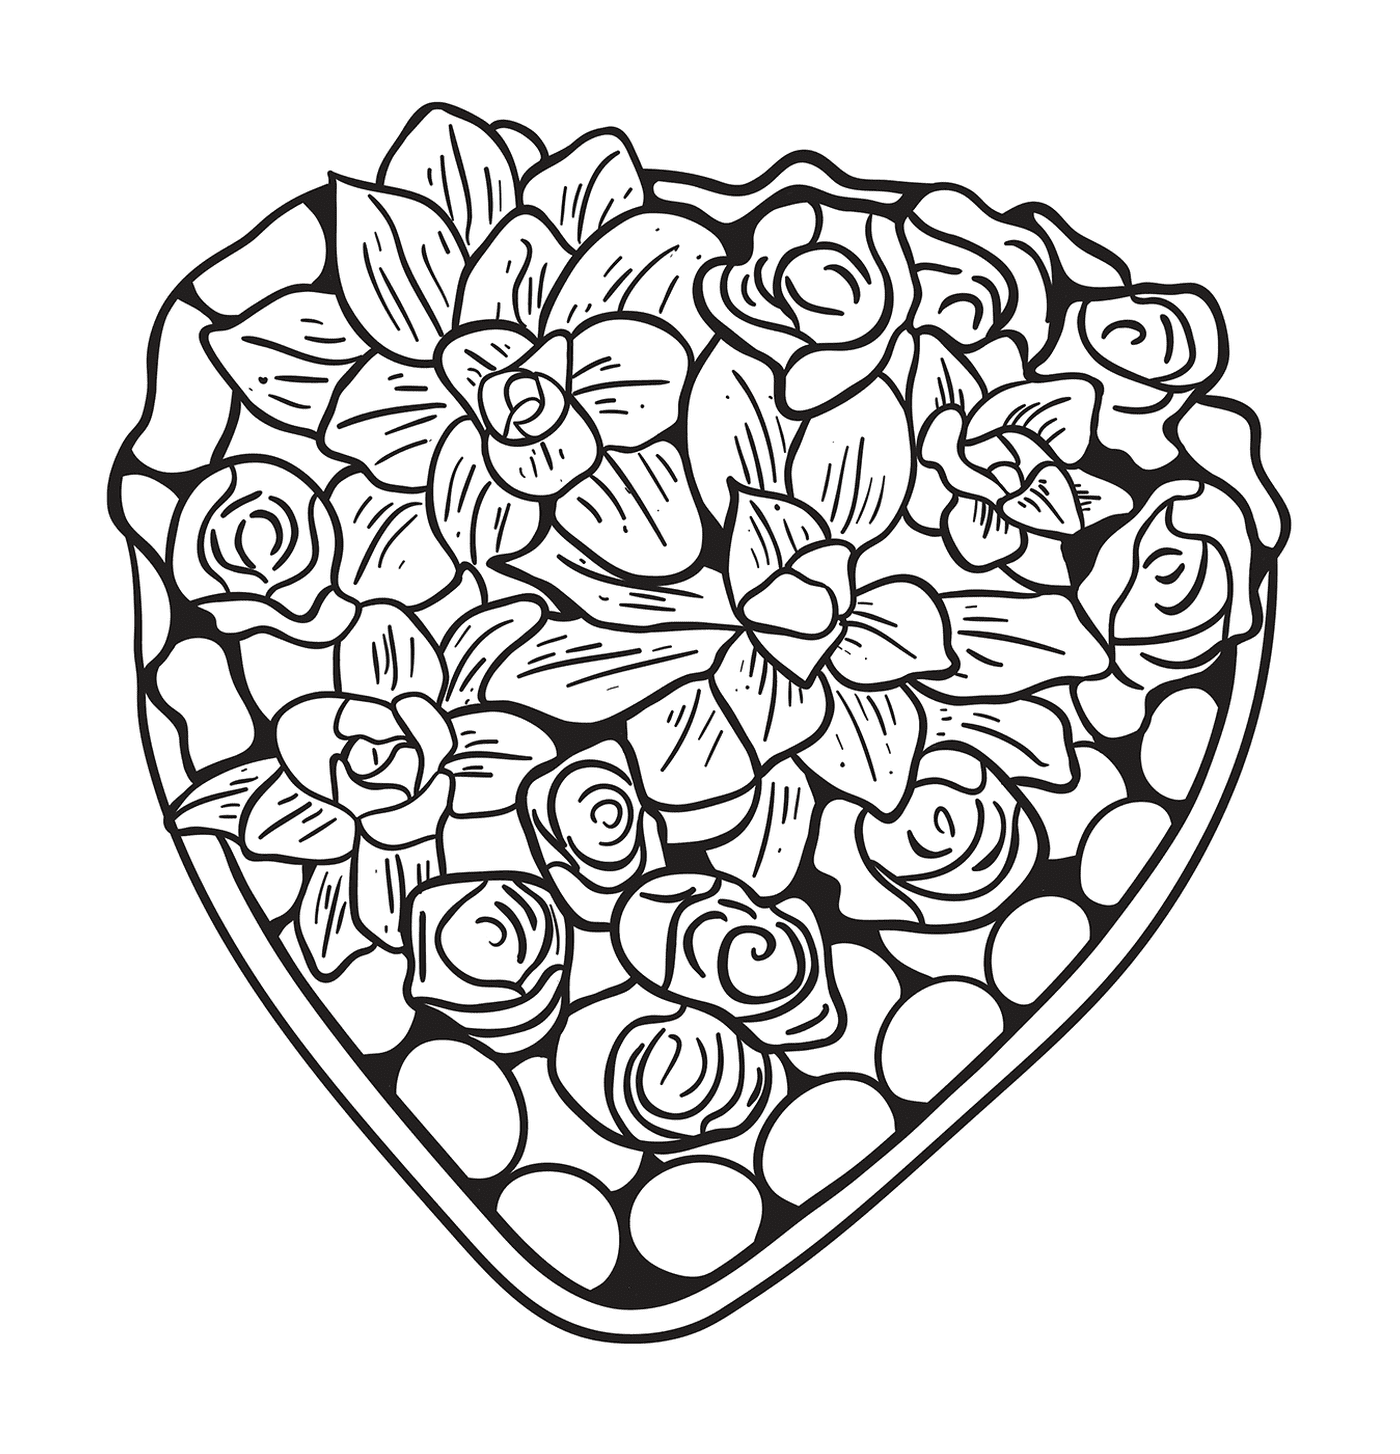  Coração agradável composto de flores e rosas 